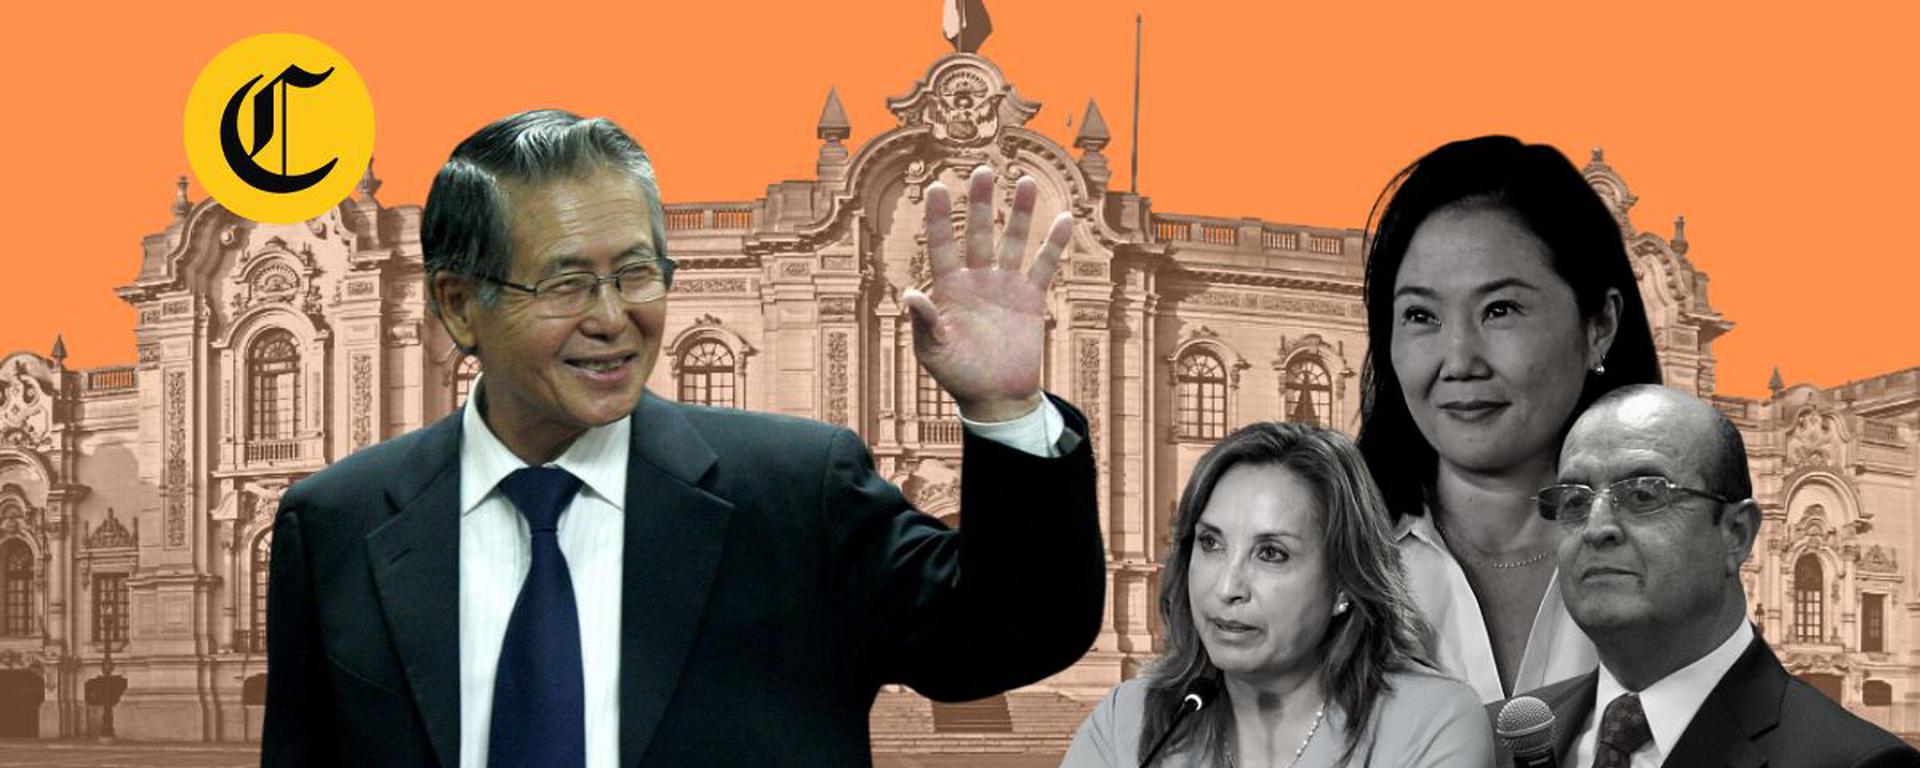 Alberto Fujimori: ¿Qué dice Fuerza Popular con respecto a sus declaraciones sobre Dina Boluarte y Vladimiro Montesinos?